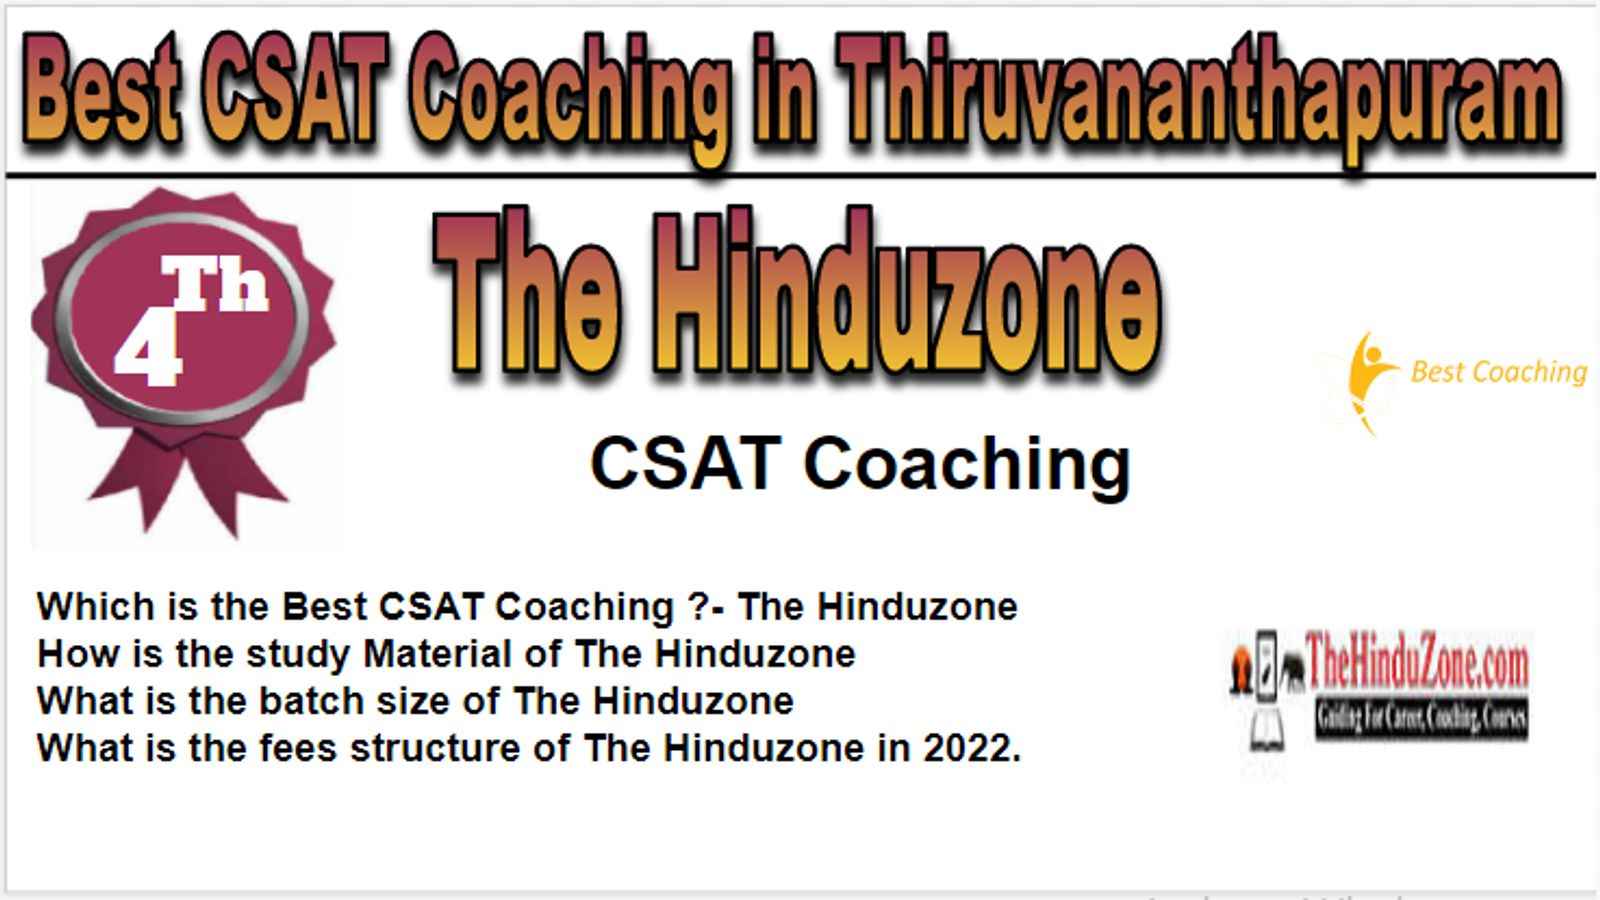 Rank 4 Best CSAT Coaching in Thiruvananthapuram